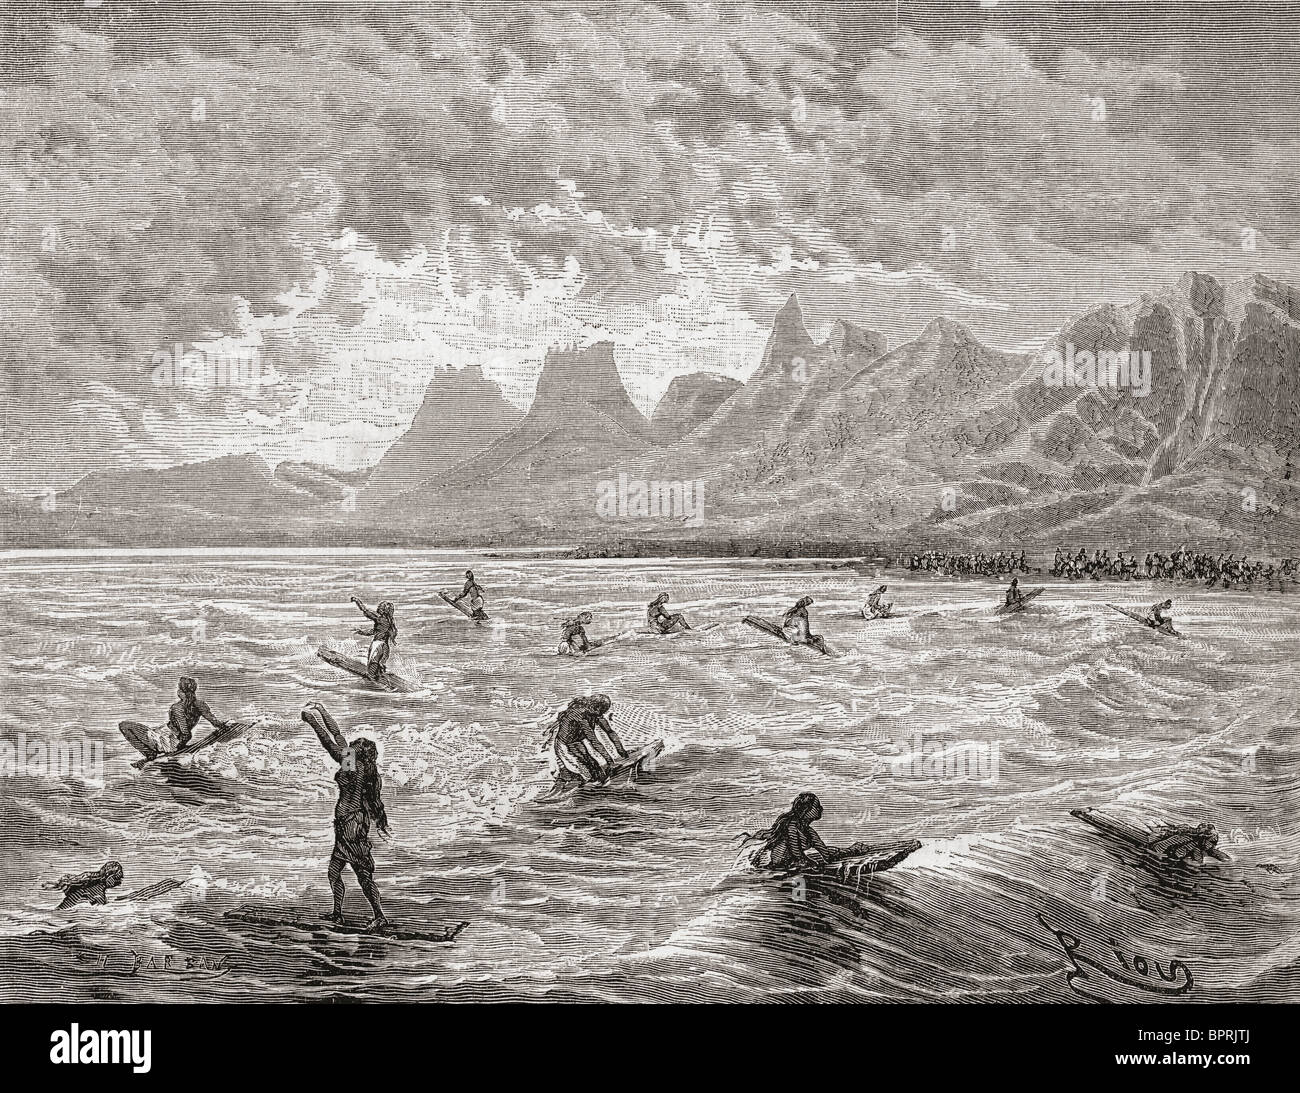 Hawaiians surfing in the 19th century. Stock Photo